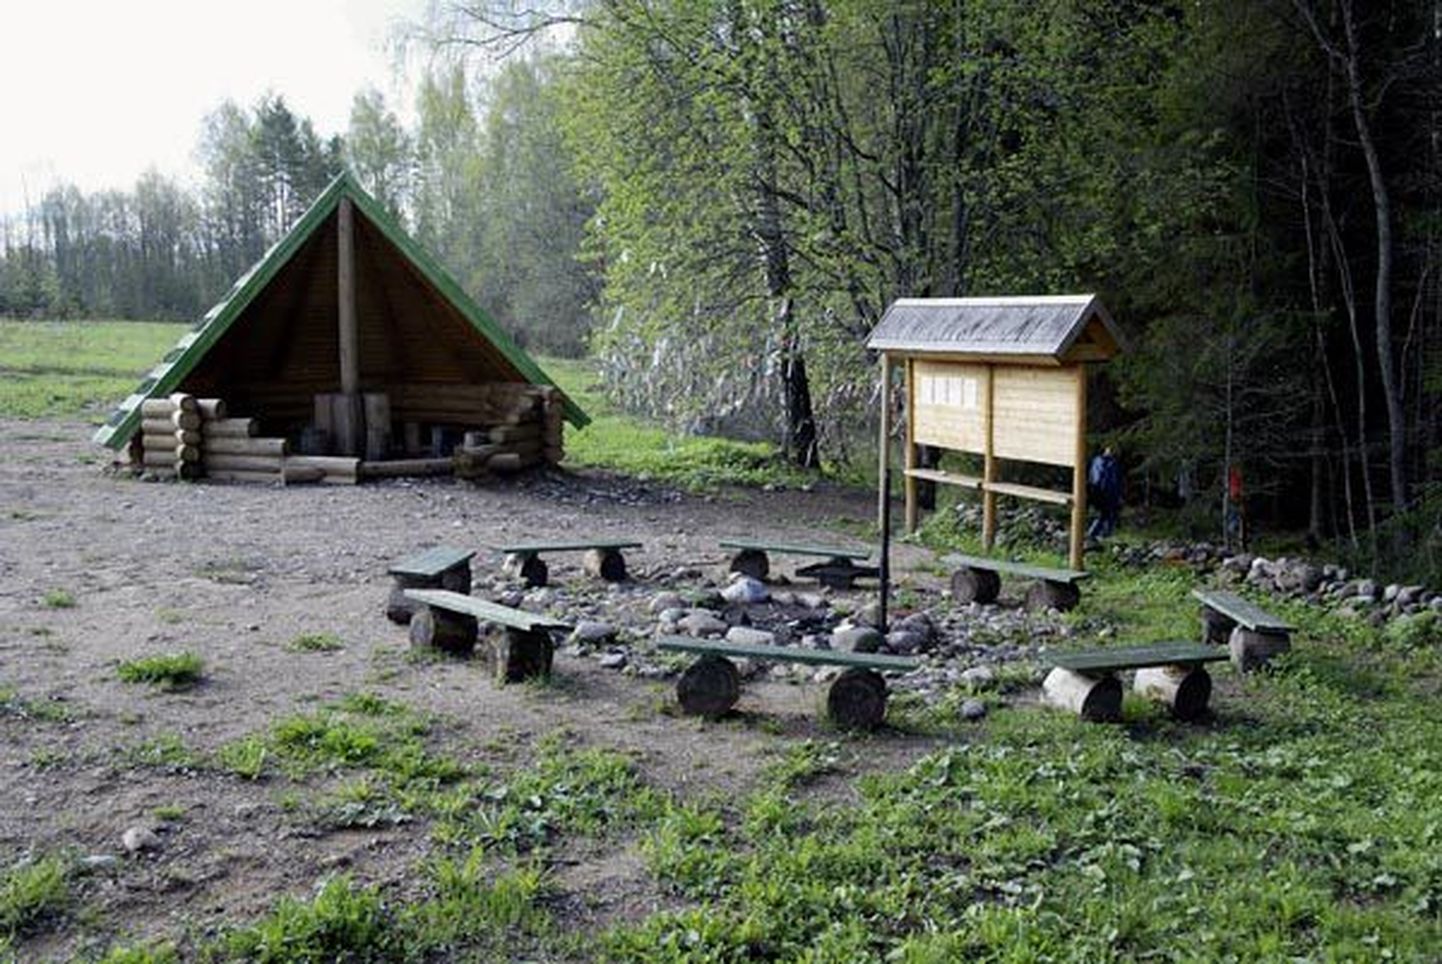 Teringi kaitseala matkarada on koos oma puhkekohtadega üks osa tulevasest Sakala puhkealast.